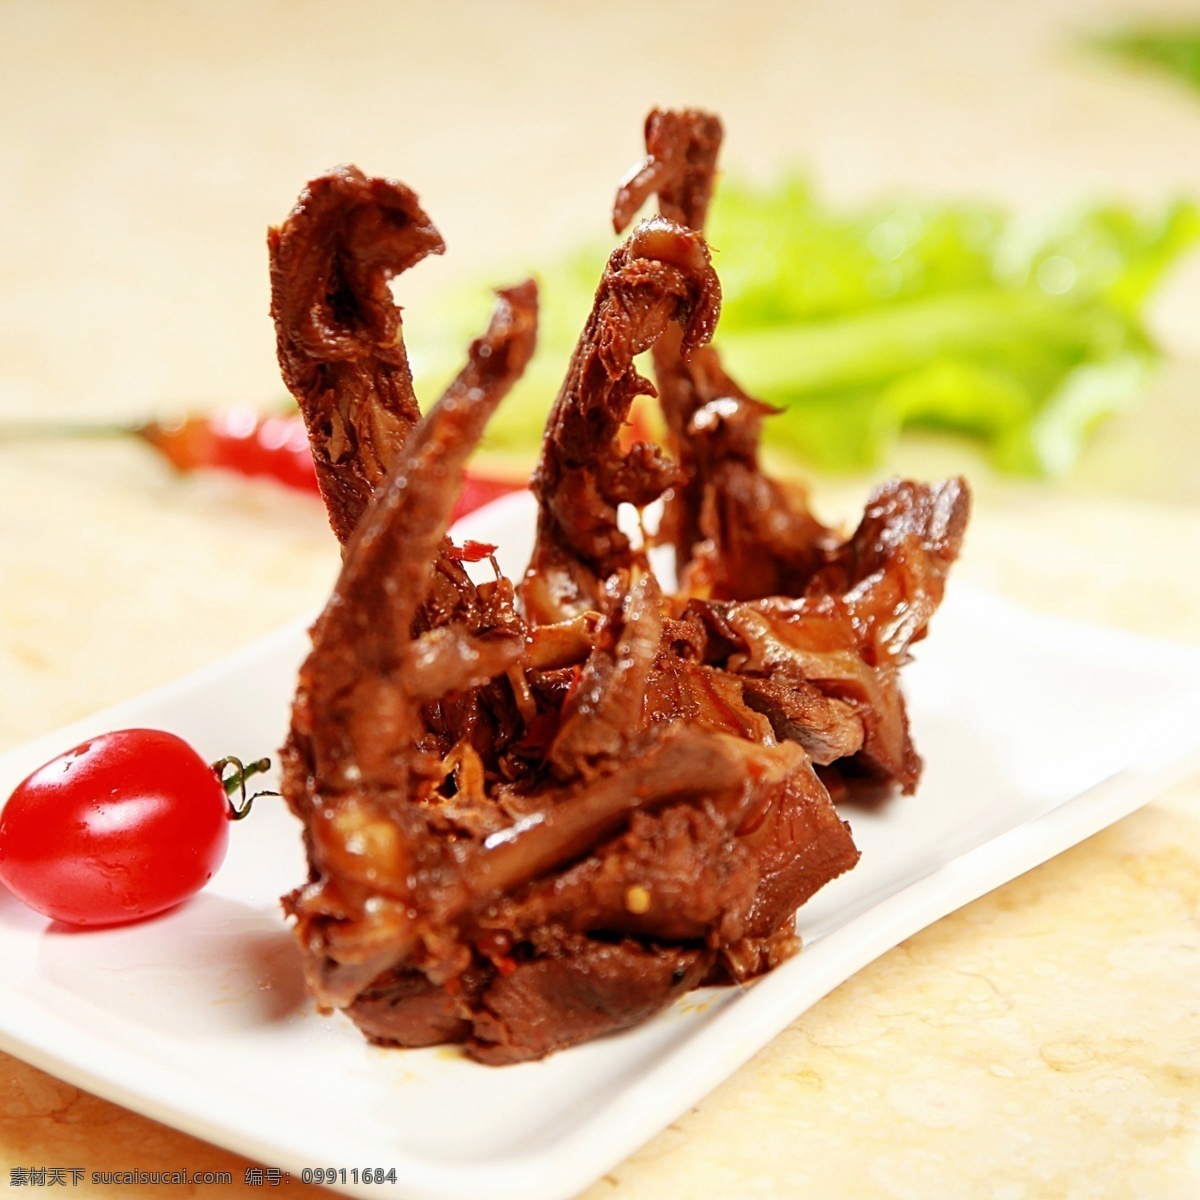 麻辣鸭锁骨 蔬菜 肉类 肉食 食物 食品 鸭肉 鸭锁骨 麻辣 中国菜 餐饮美食 传统美食